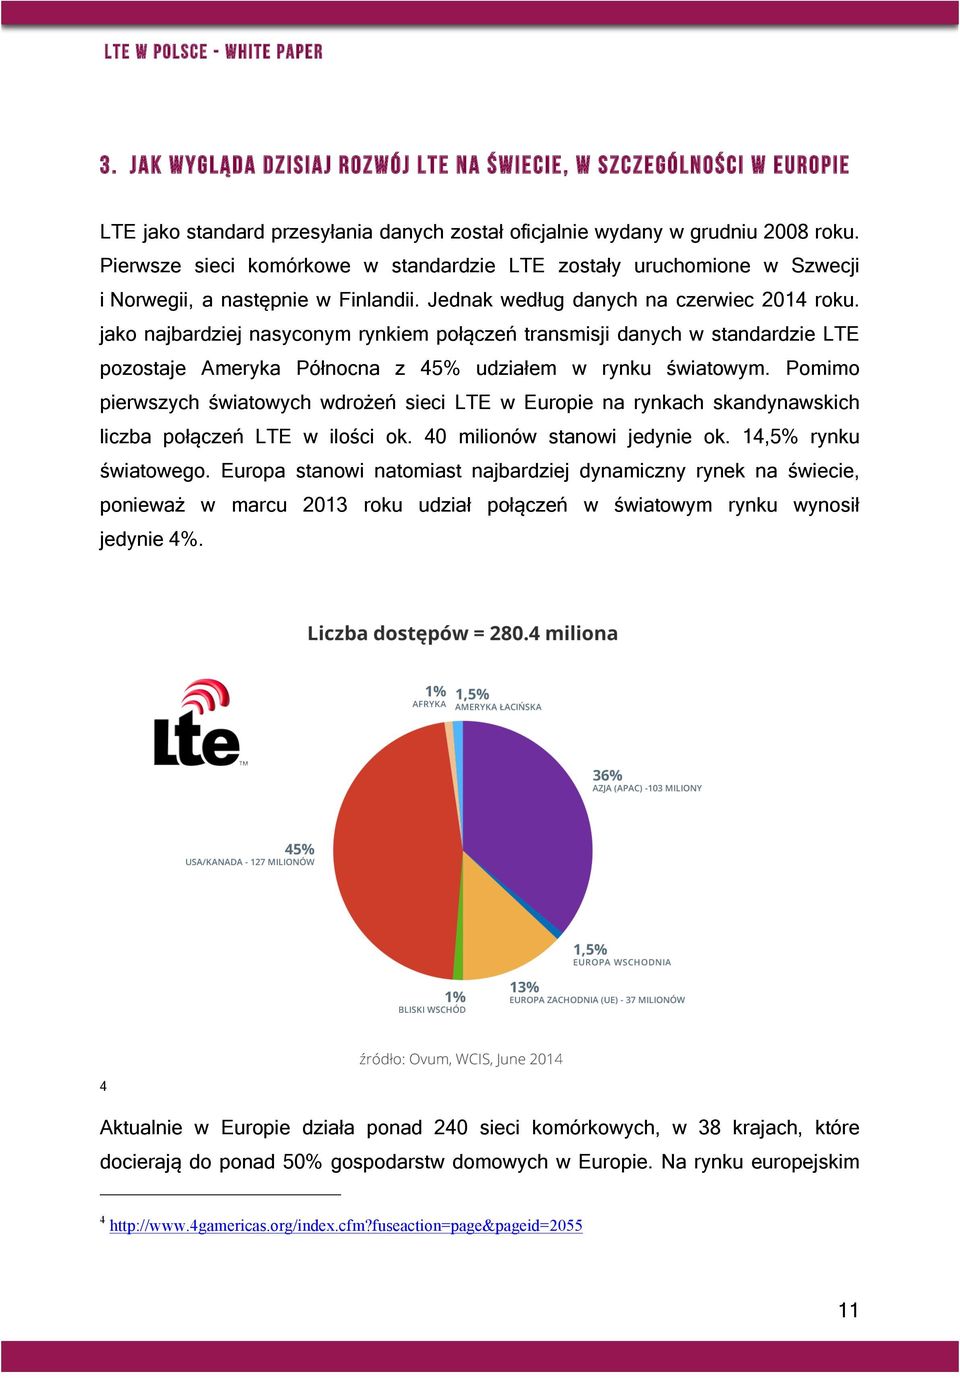 jako najbardziej nasyconym rynkiem połączeń transmisji danych w standardzie LTE pozostaje Ameryka Północna z 45% udziałem w rynku światowym.